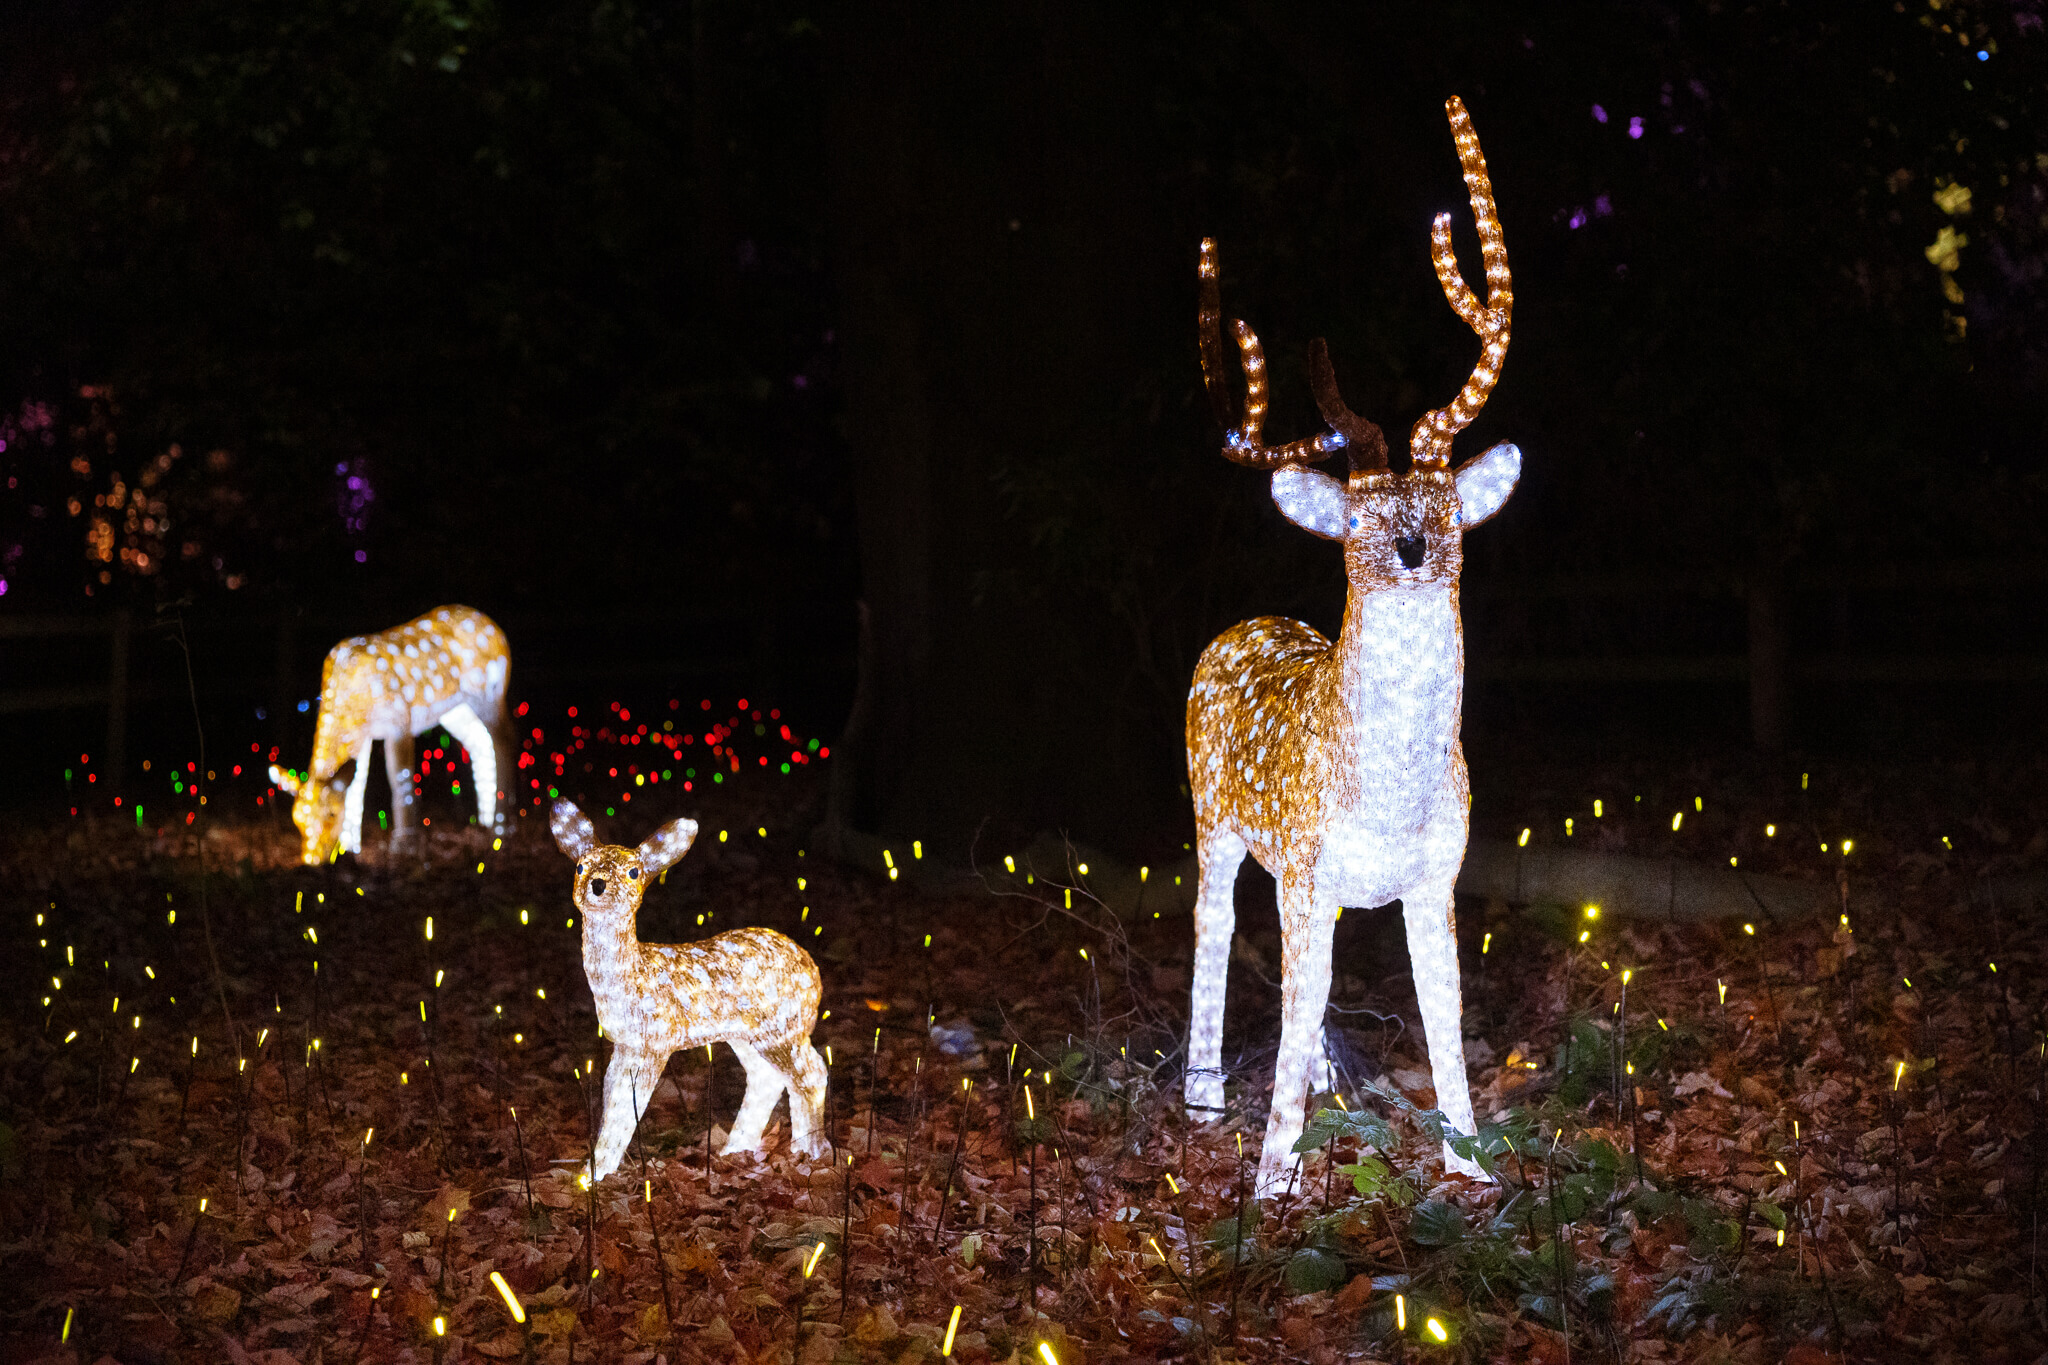 Illuminated deer figures